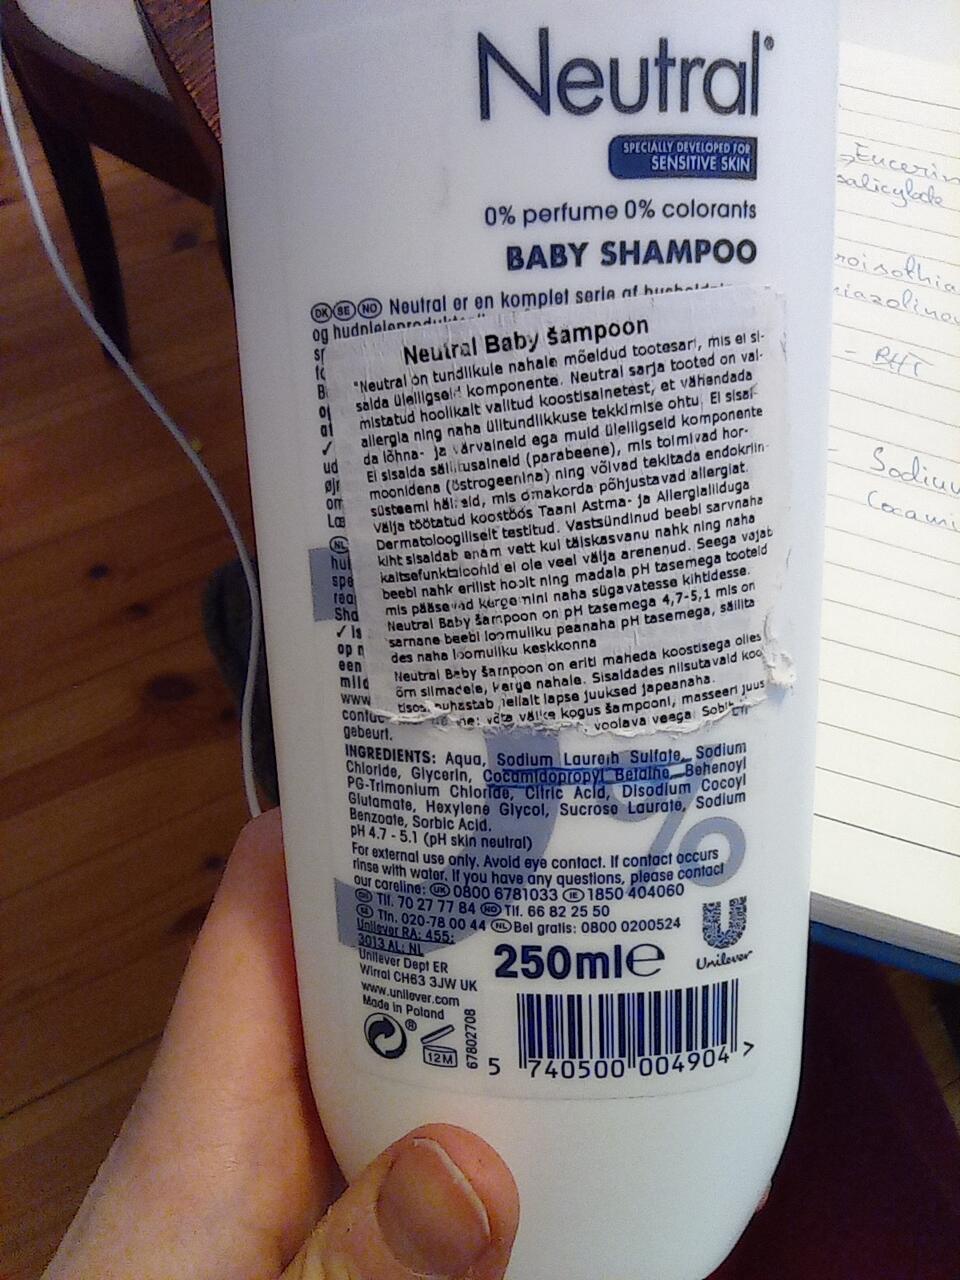 Eesti Allergiliidu poolt tunnustatud beebišampoon. 2 ohtlikku ainet. Kleepsu pidin enne maha pesema, kui koostist nägin.